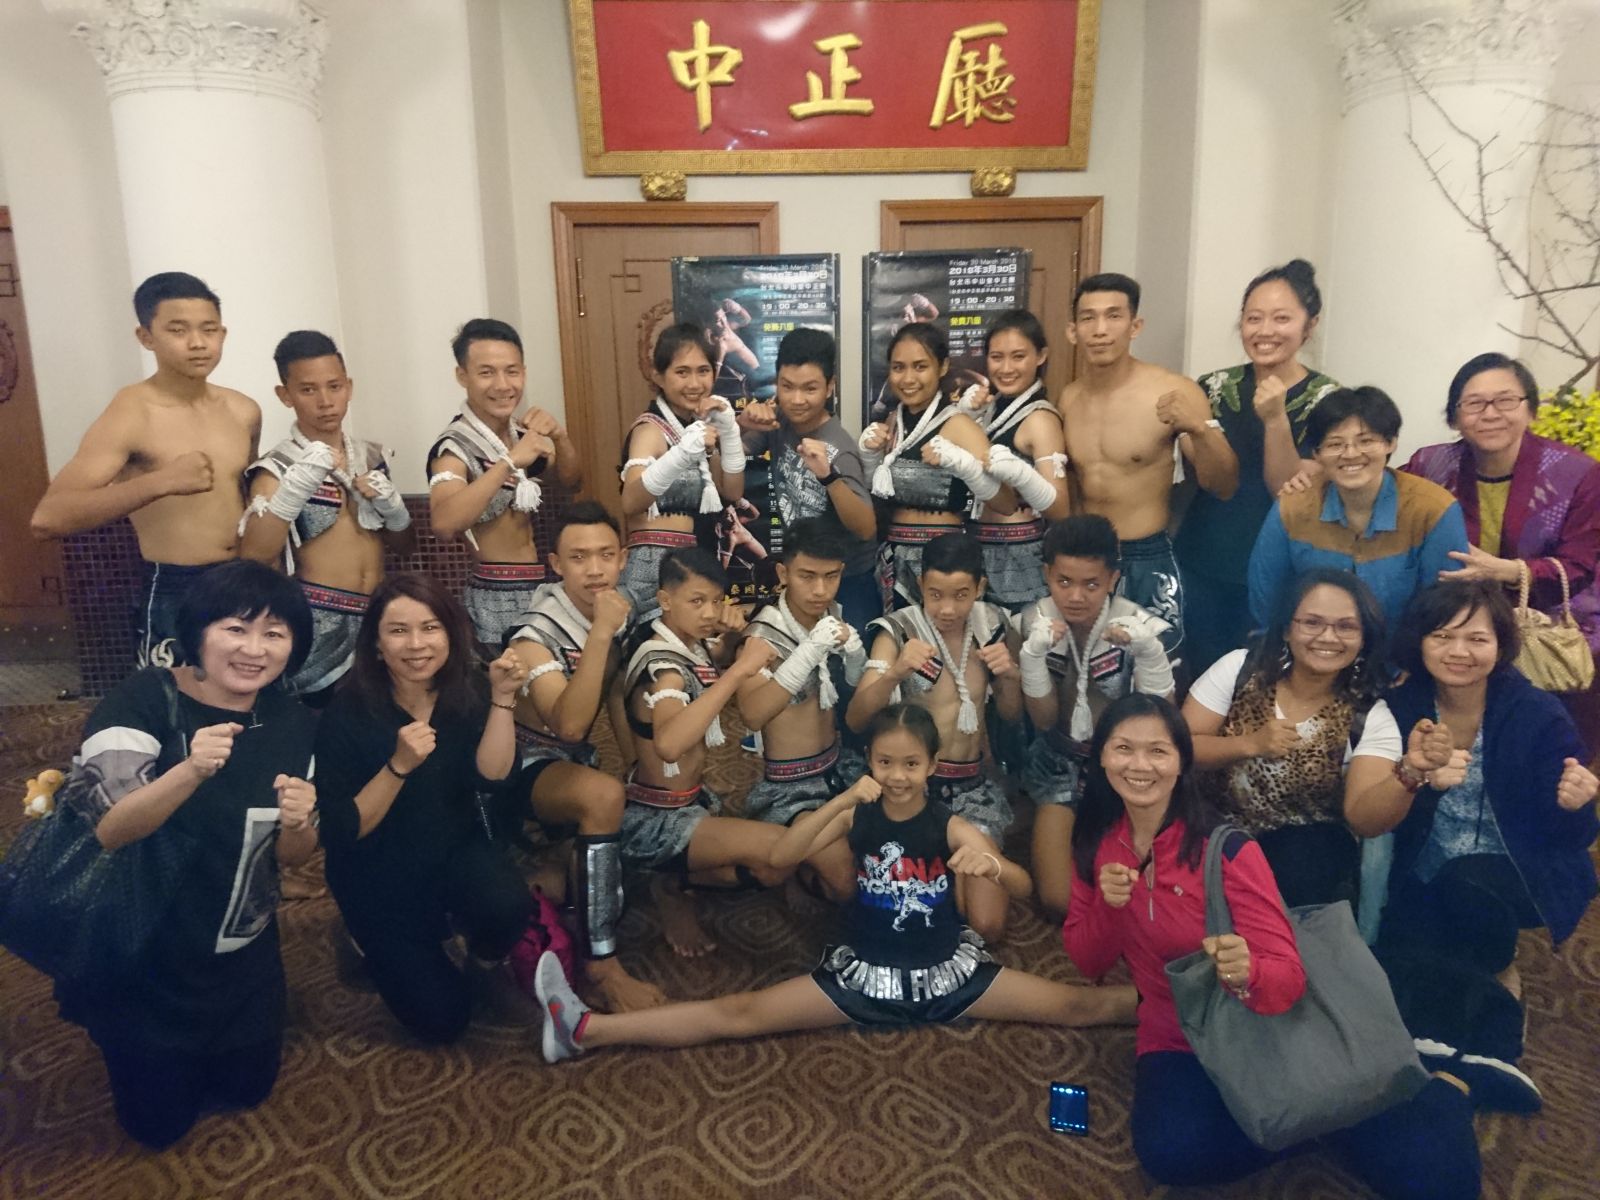 新二代打泰拳體驗母國文化